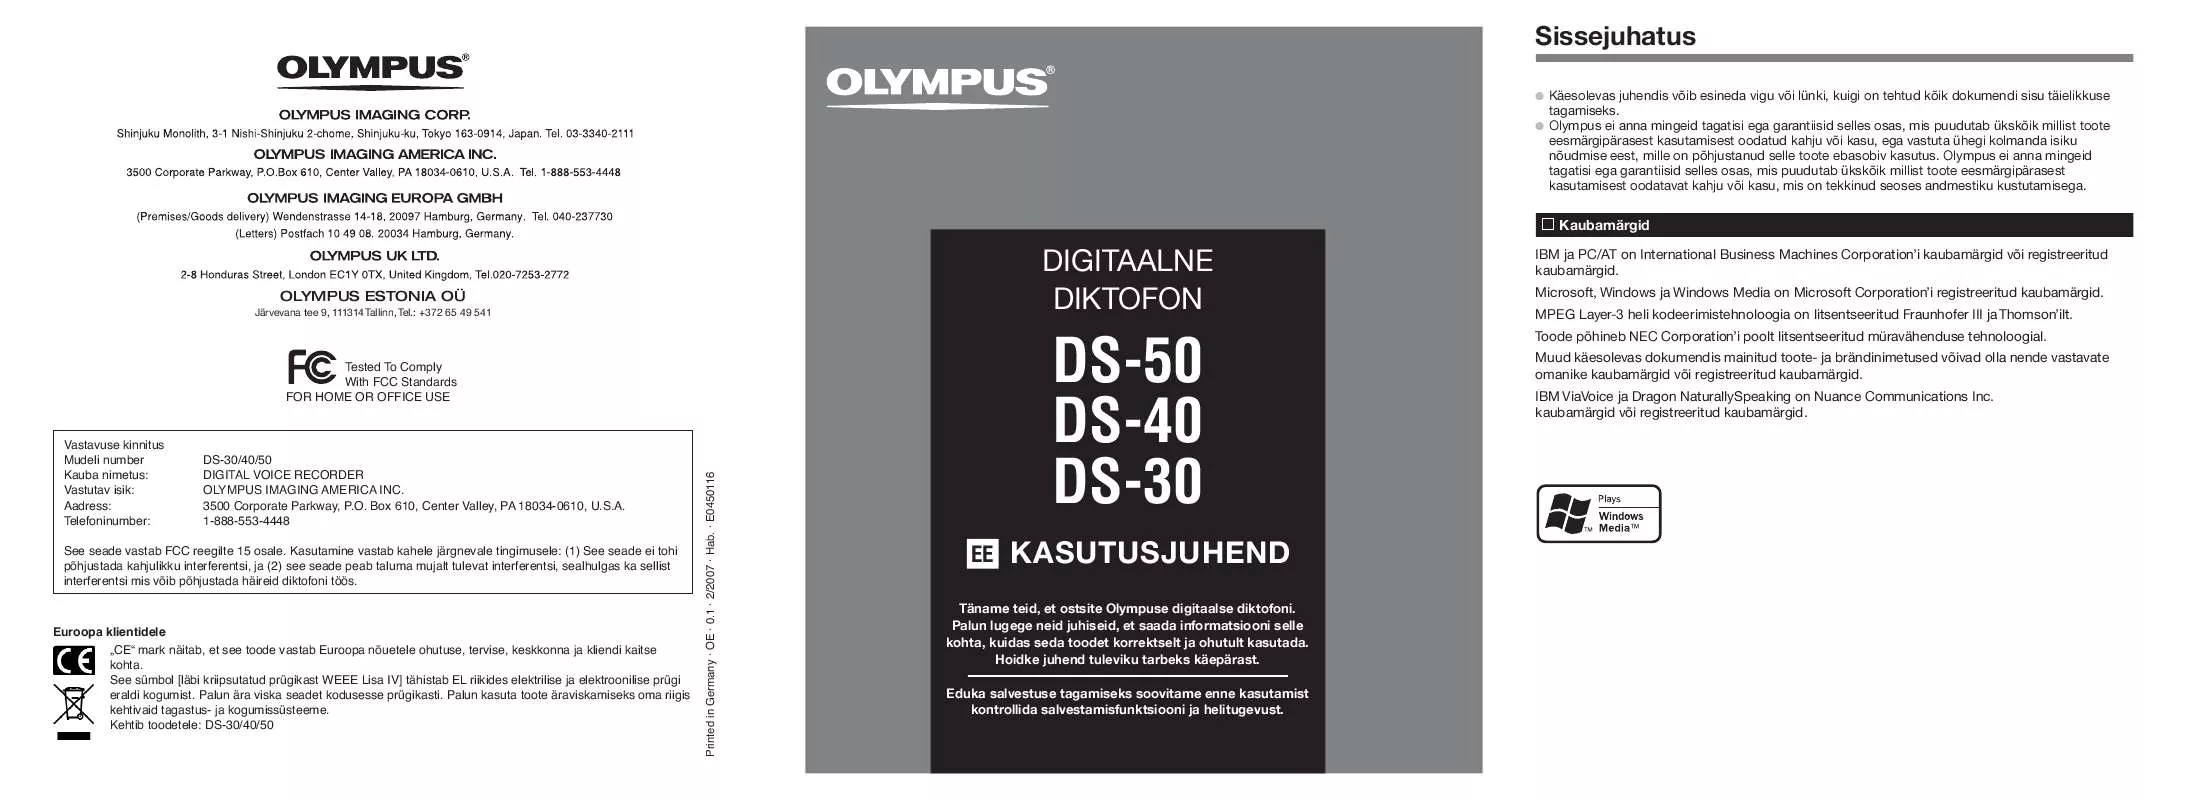 Mode d'emploi OLYMPUS DS-30